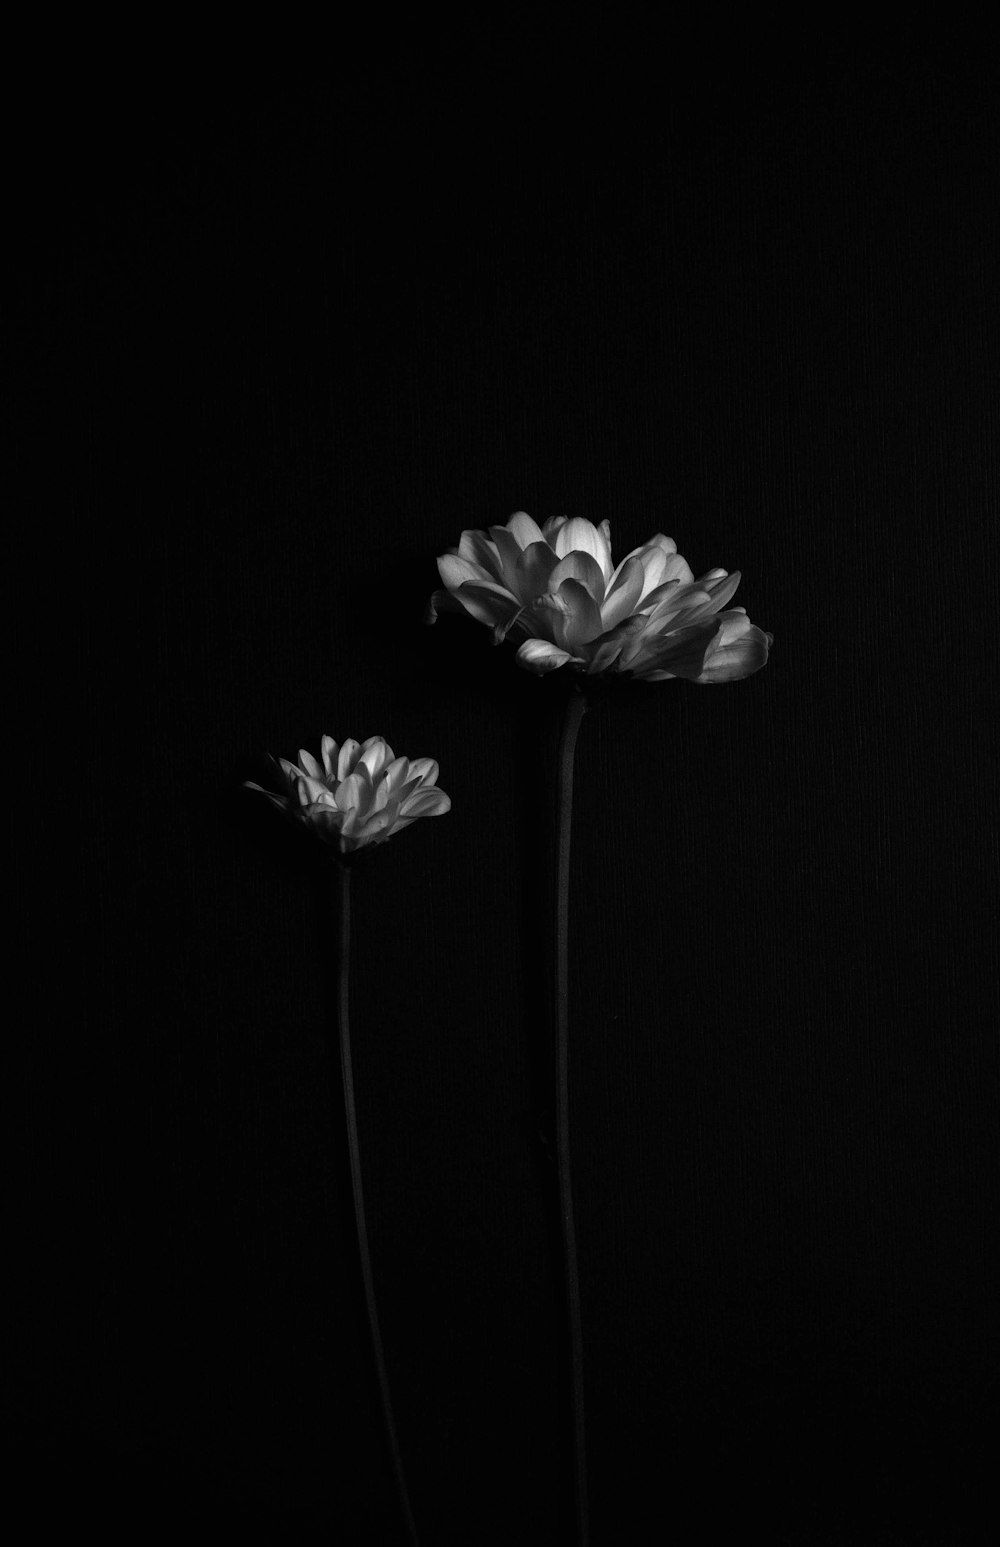  Blume Hintergrundbild 1000x1547. Foto zum Thema Weiße Blume auf schwarzem Hintergrund